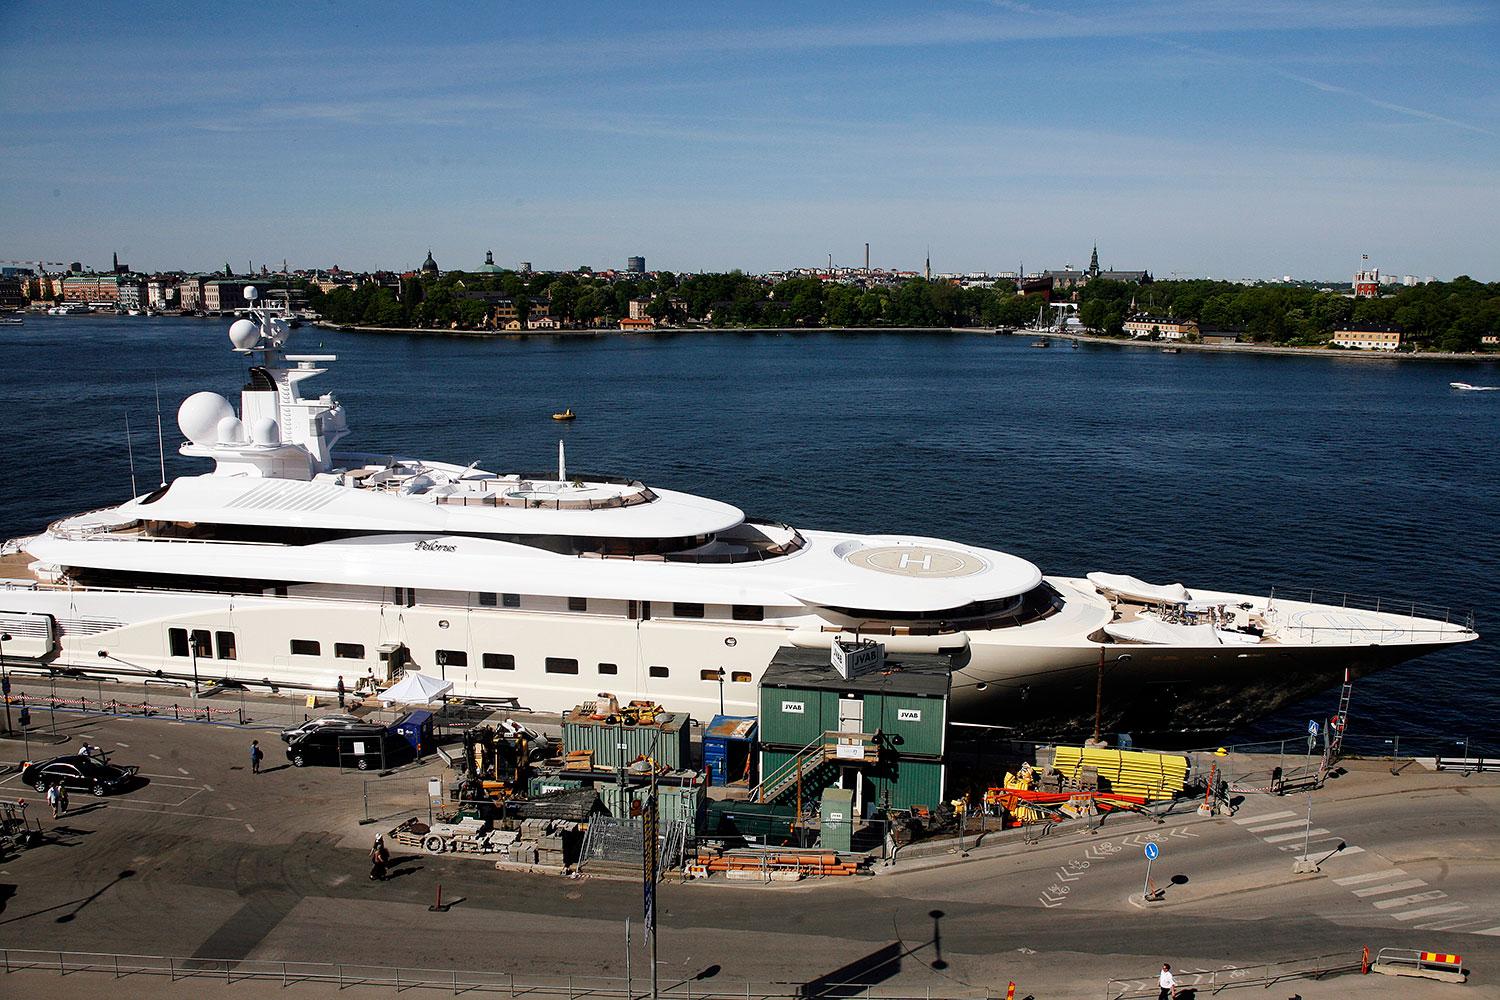 Innan Roman Abramovitj lät bygga Eclipse åkte han omkring i den lite mindre yachten Pelorus, 115 meter lång. Här under ett besök i Stockholm 2008.